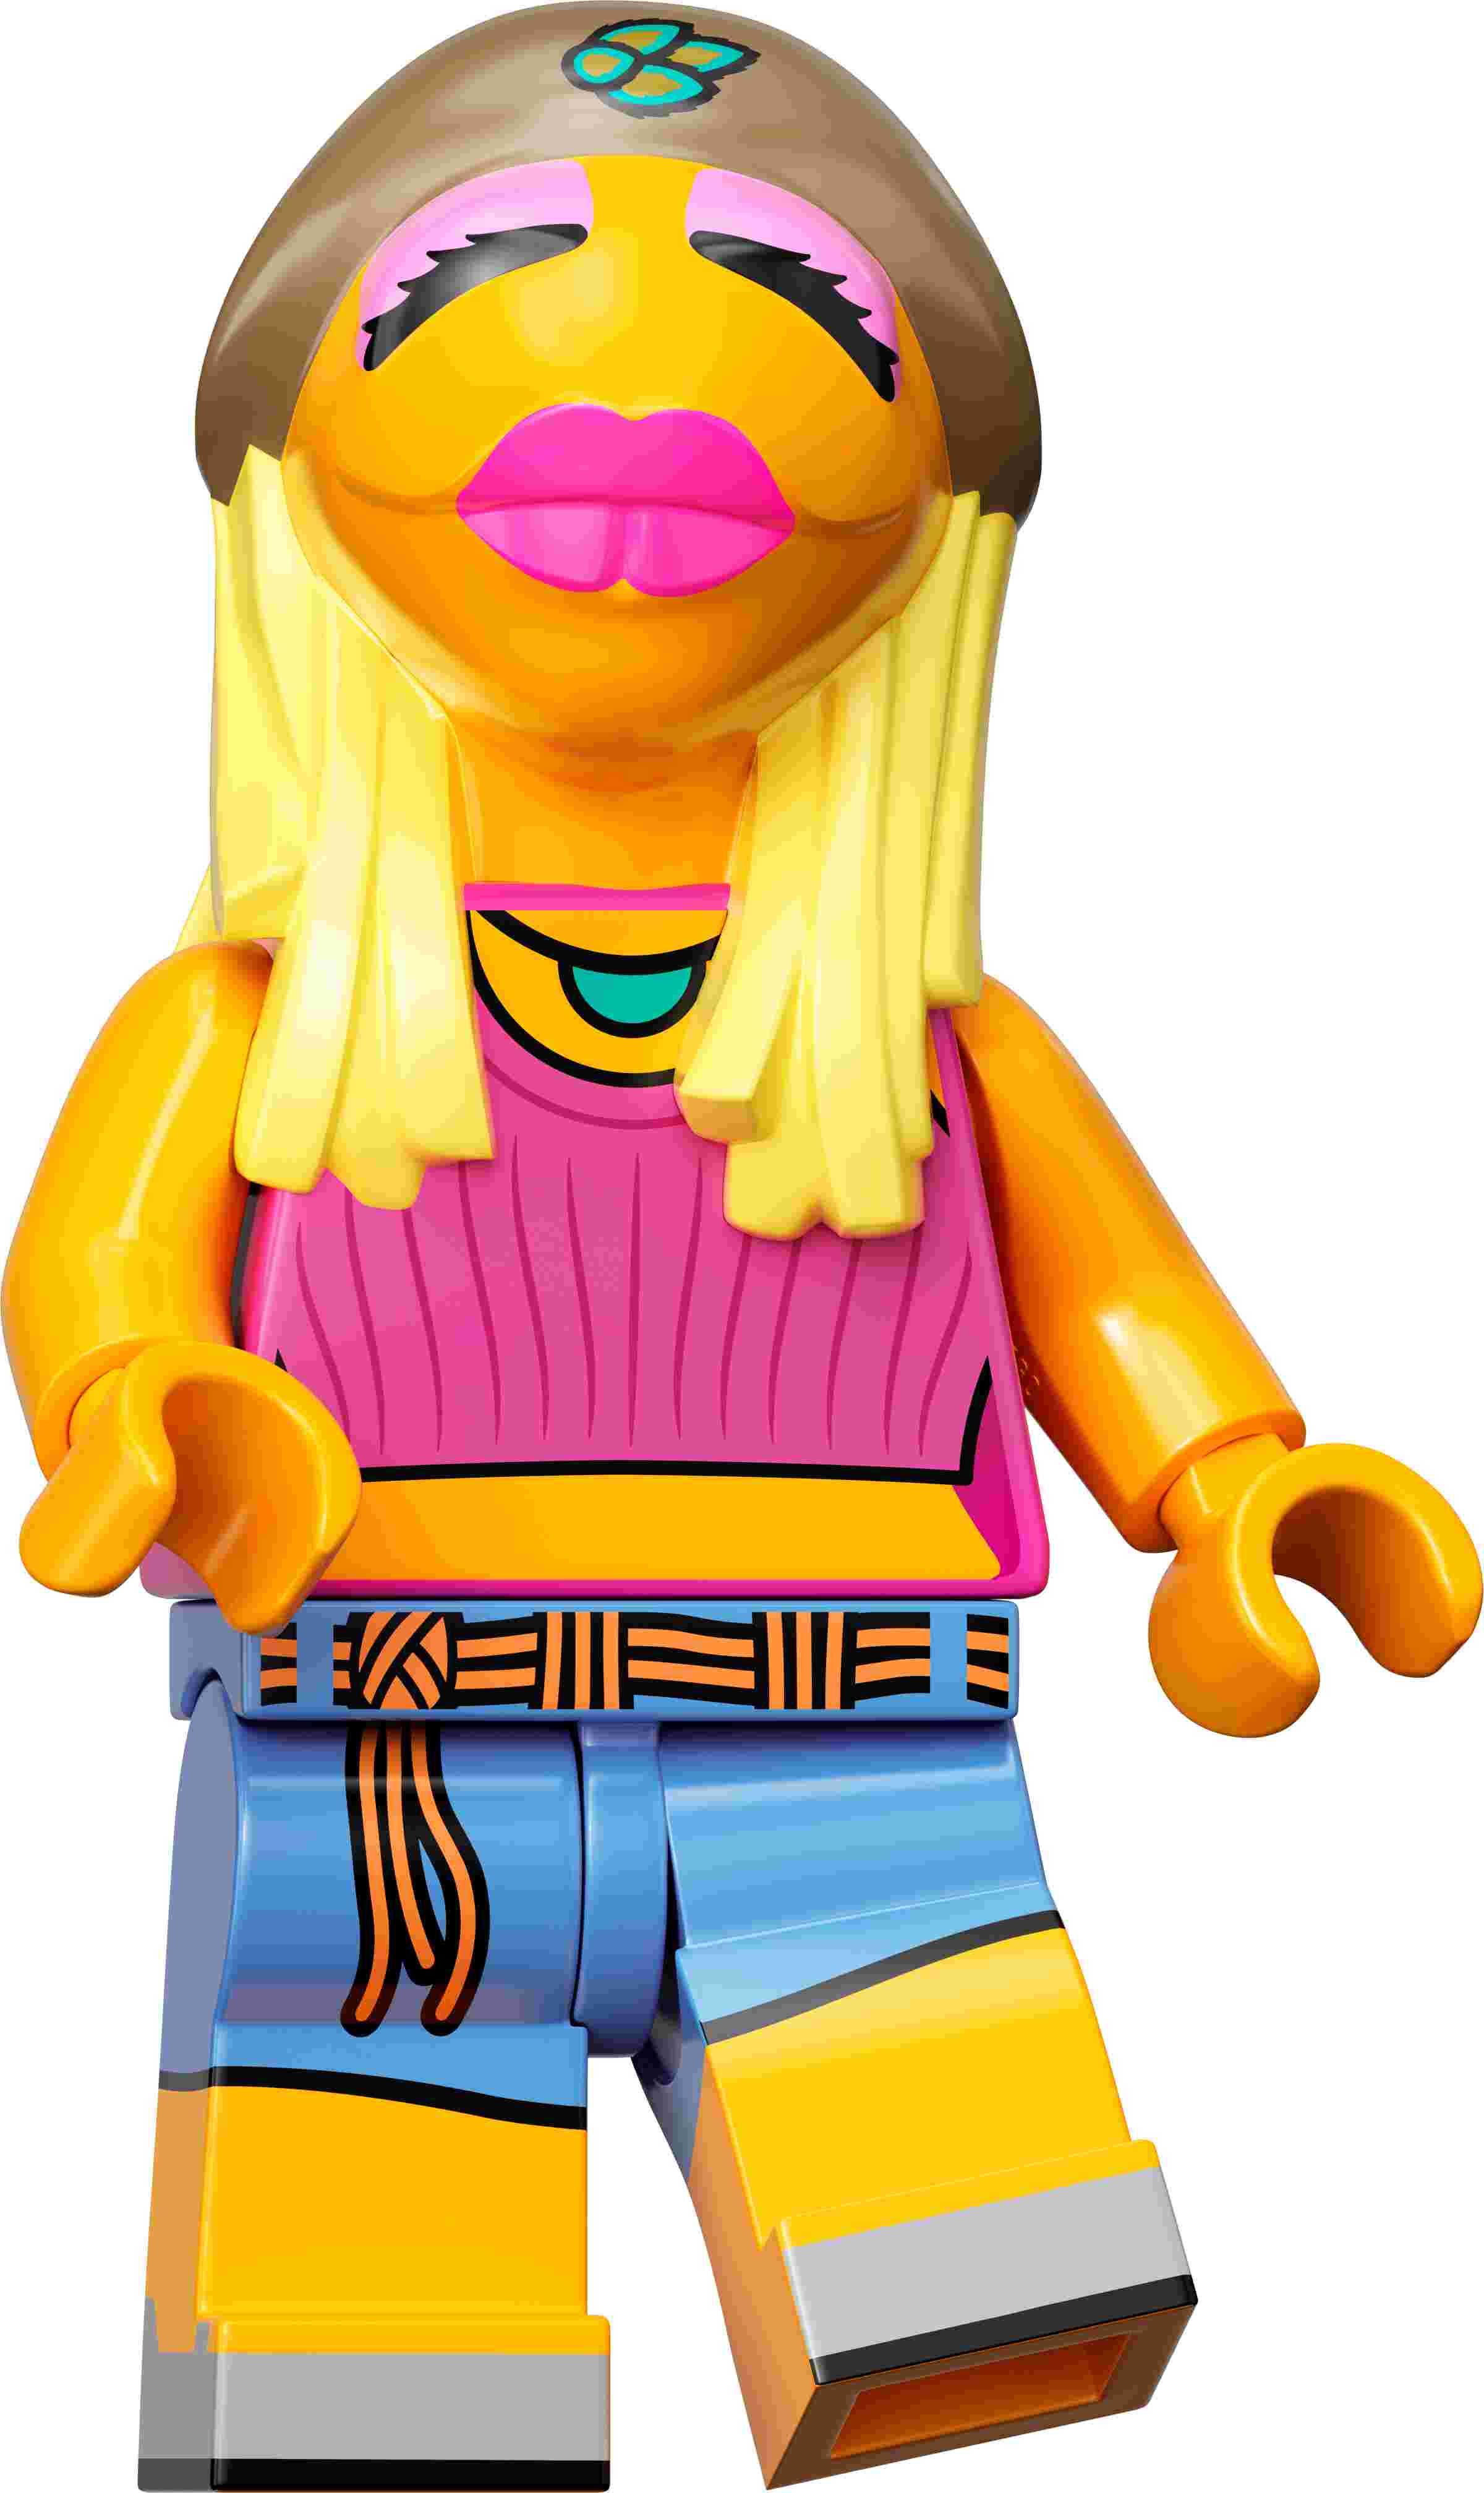 LEGO 71033 Minifiguren Die Muppets,1 von 12 Minifiguren Limited Edition Sammlung